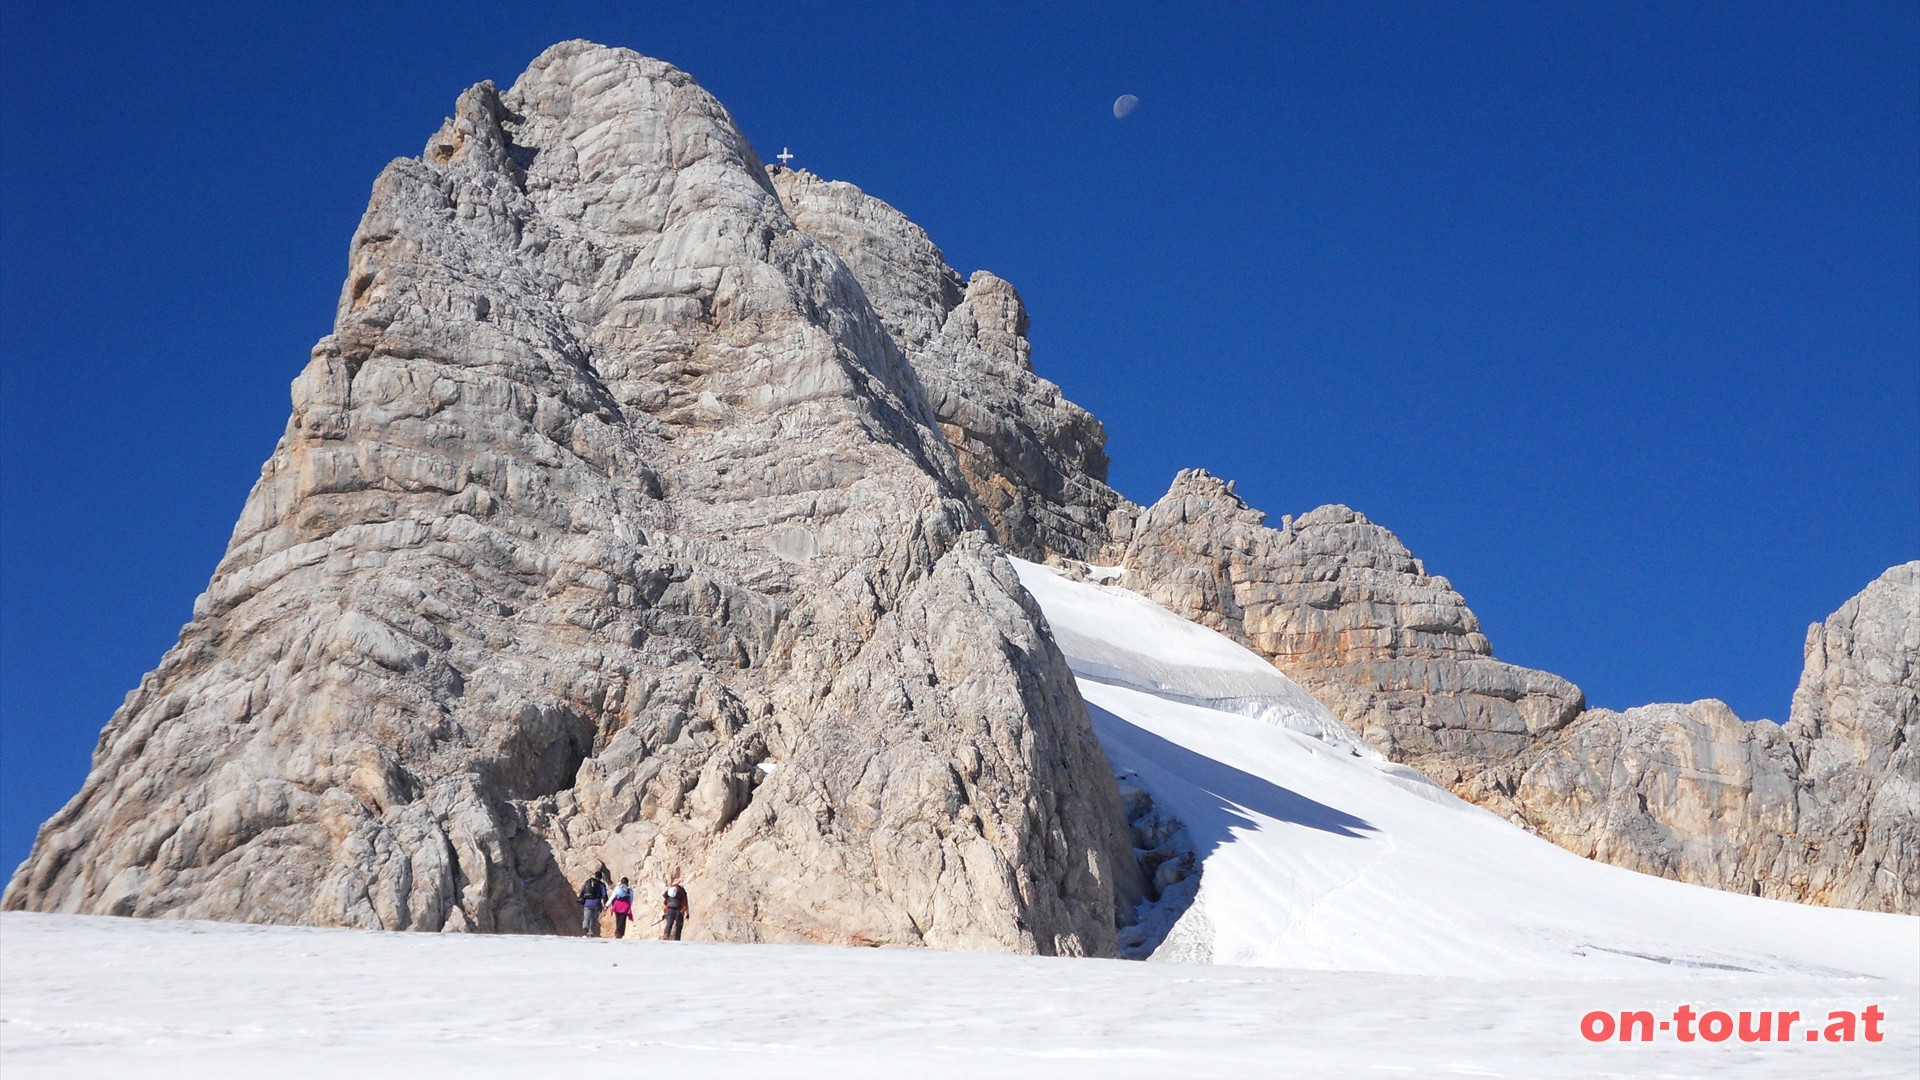 Zustieg zur Dachstein Nordostflanke und zum Klettersteig. Gletscherspalten knnen hier nicht ausgeschlossen werden.